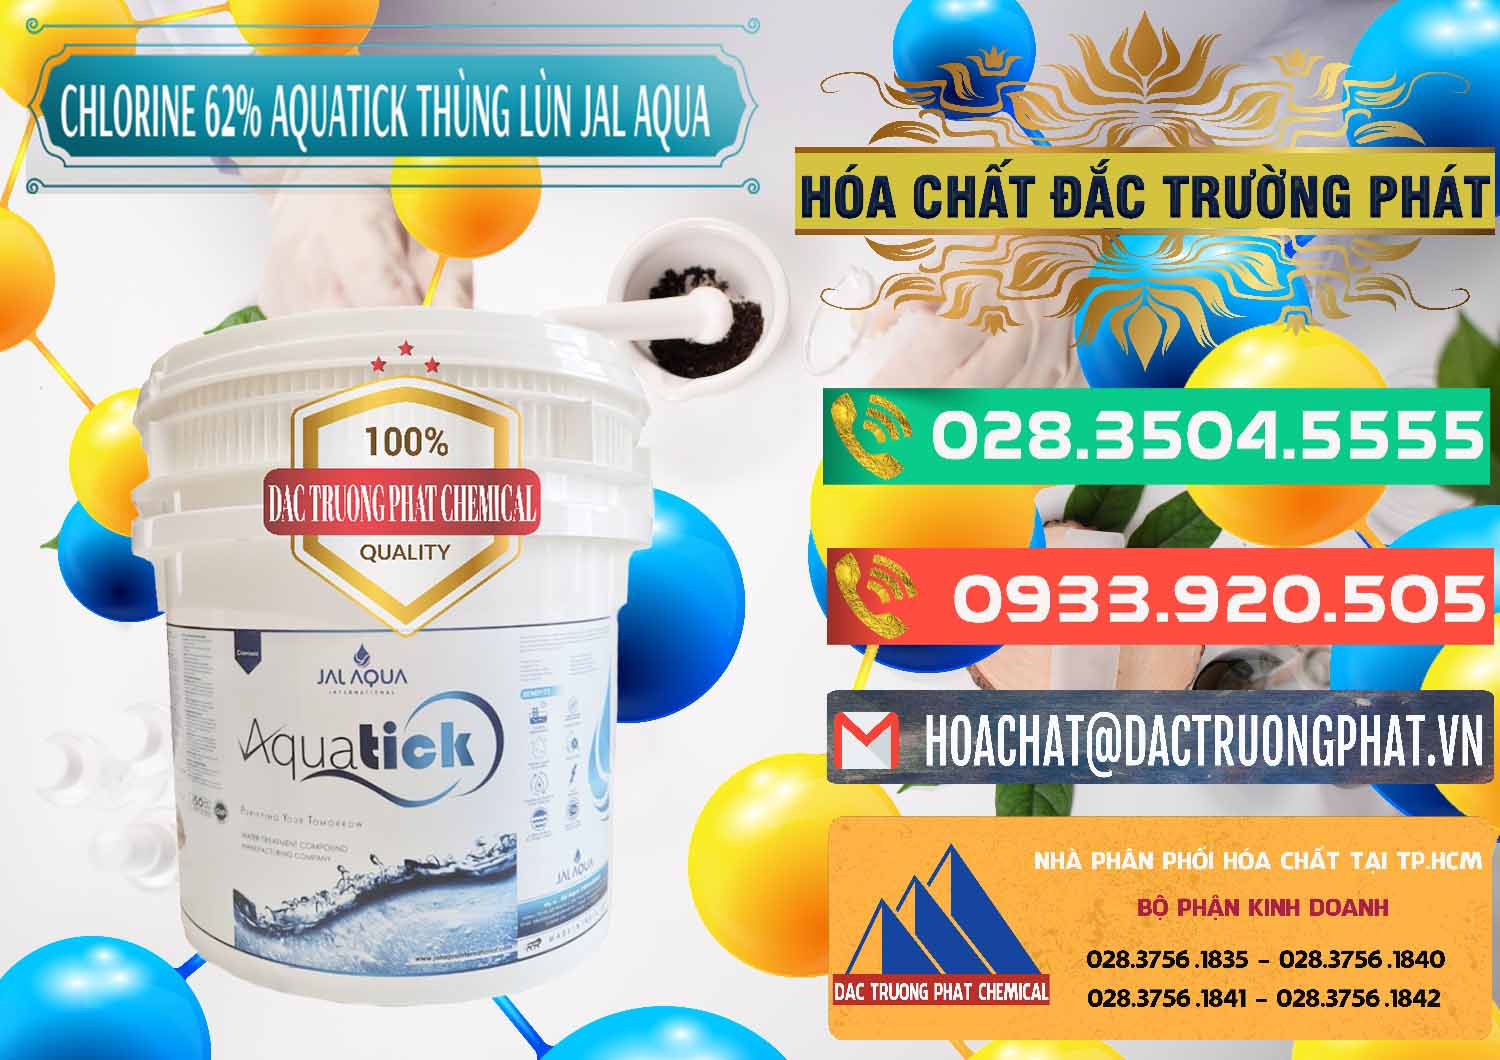 Nơi cung ứng _ bán Chlorine – Clorin 62% Aquatick Thùng Lùn Jal Aqua Ấn Độ India - 0238 - Phân phối ( kinh doanh ) hóa chất tại TP.HCM - congtyhoachat.com.vn